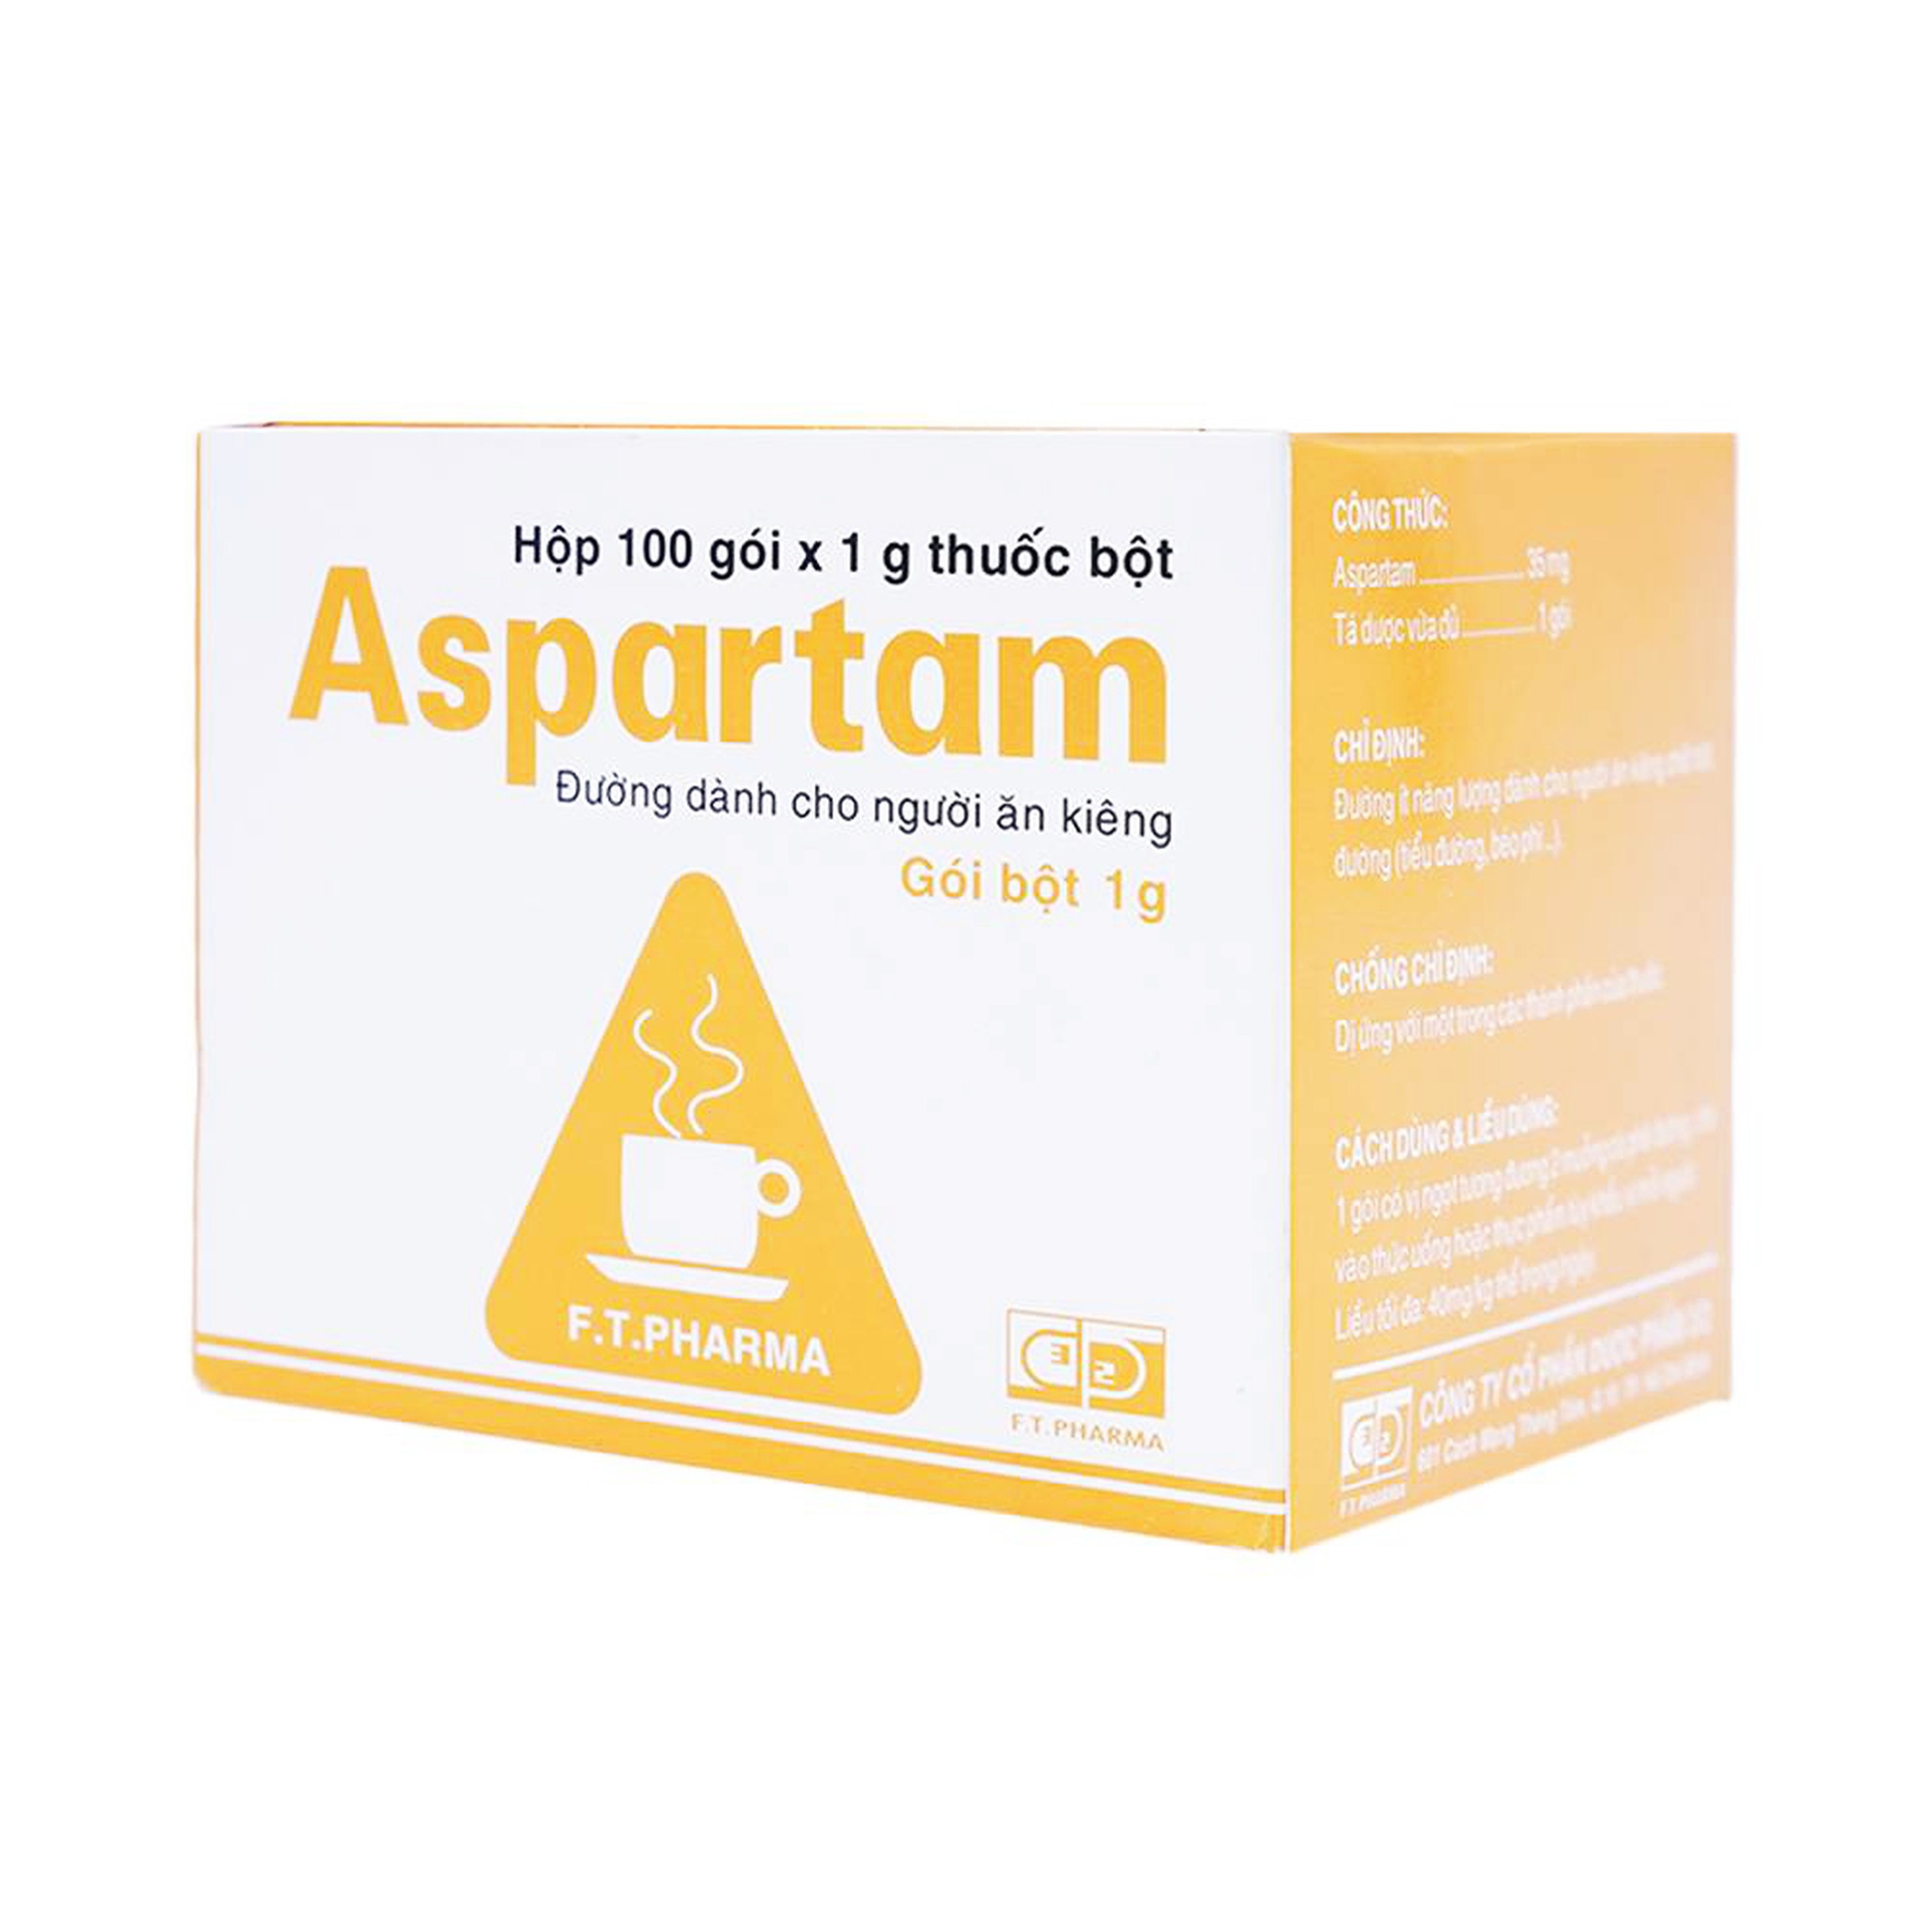 Thuốc bột Aspartam Dược 3-2 đường ít năng lượng dành cho người ăn kiêng (100 gói x 1g)